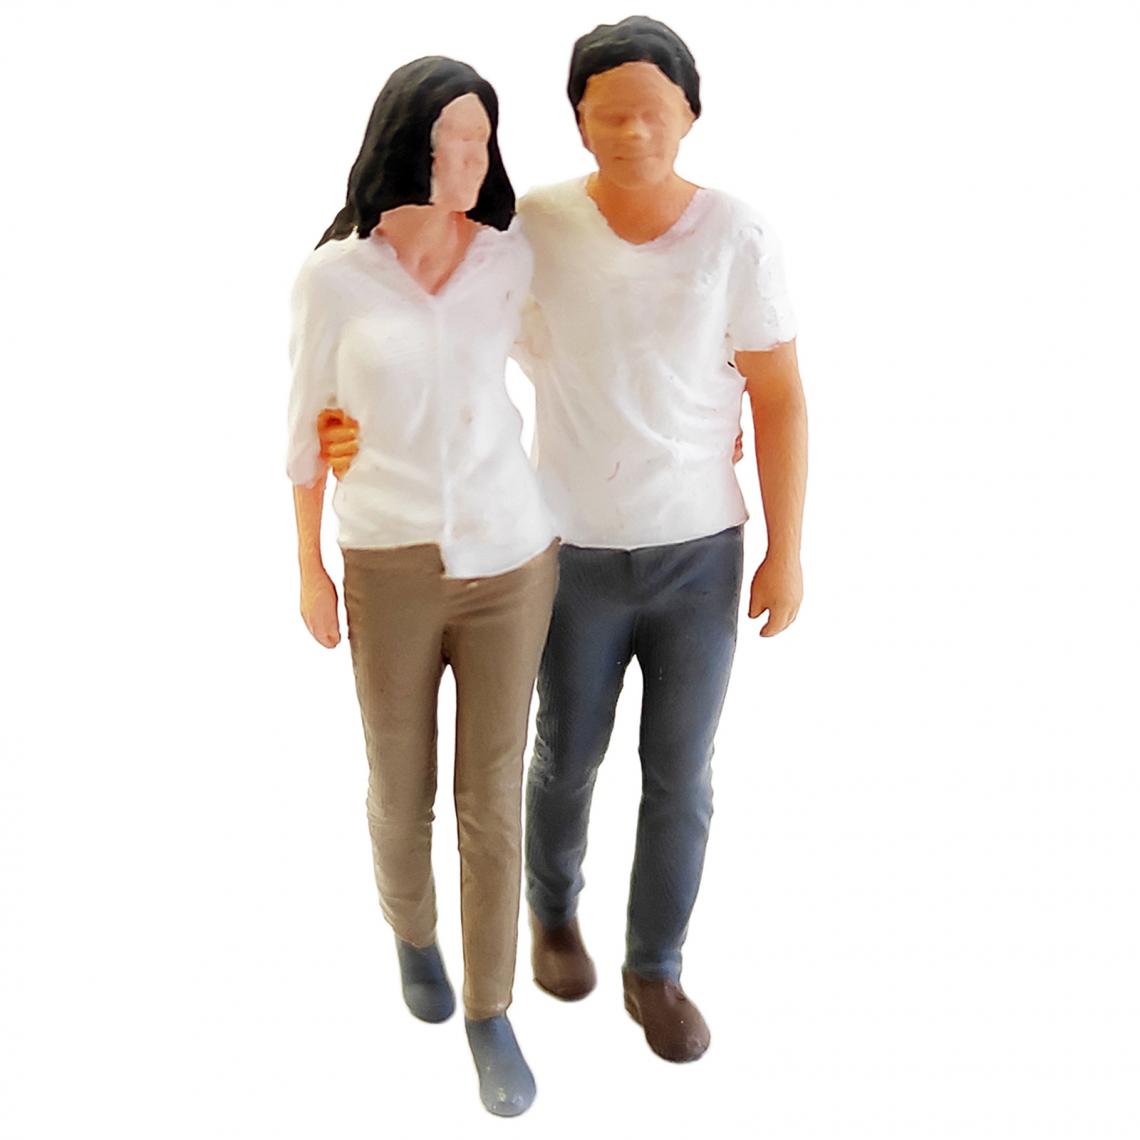 marque generique - 1:64 échelle Peinte à La Main Modèle Miniature Couple Figurines Parc Diorama Rose - Voitures